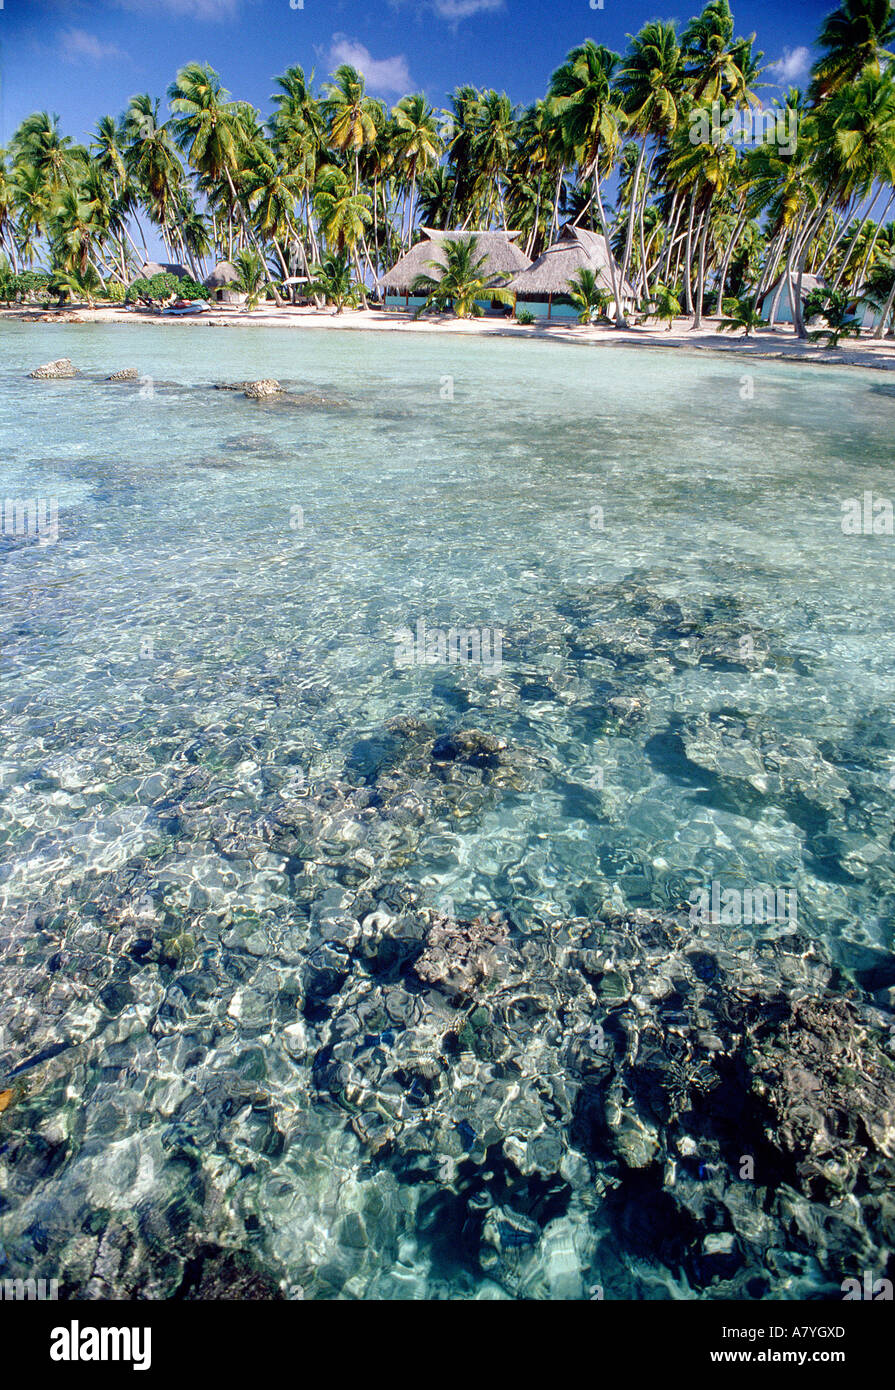 France, France, atoll de Manihi, îlot (motu) dans le lagon Banque D'Images